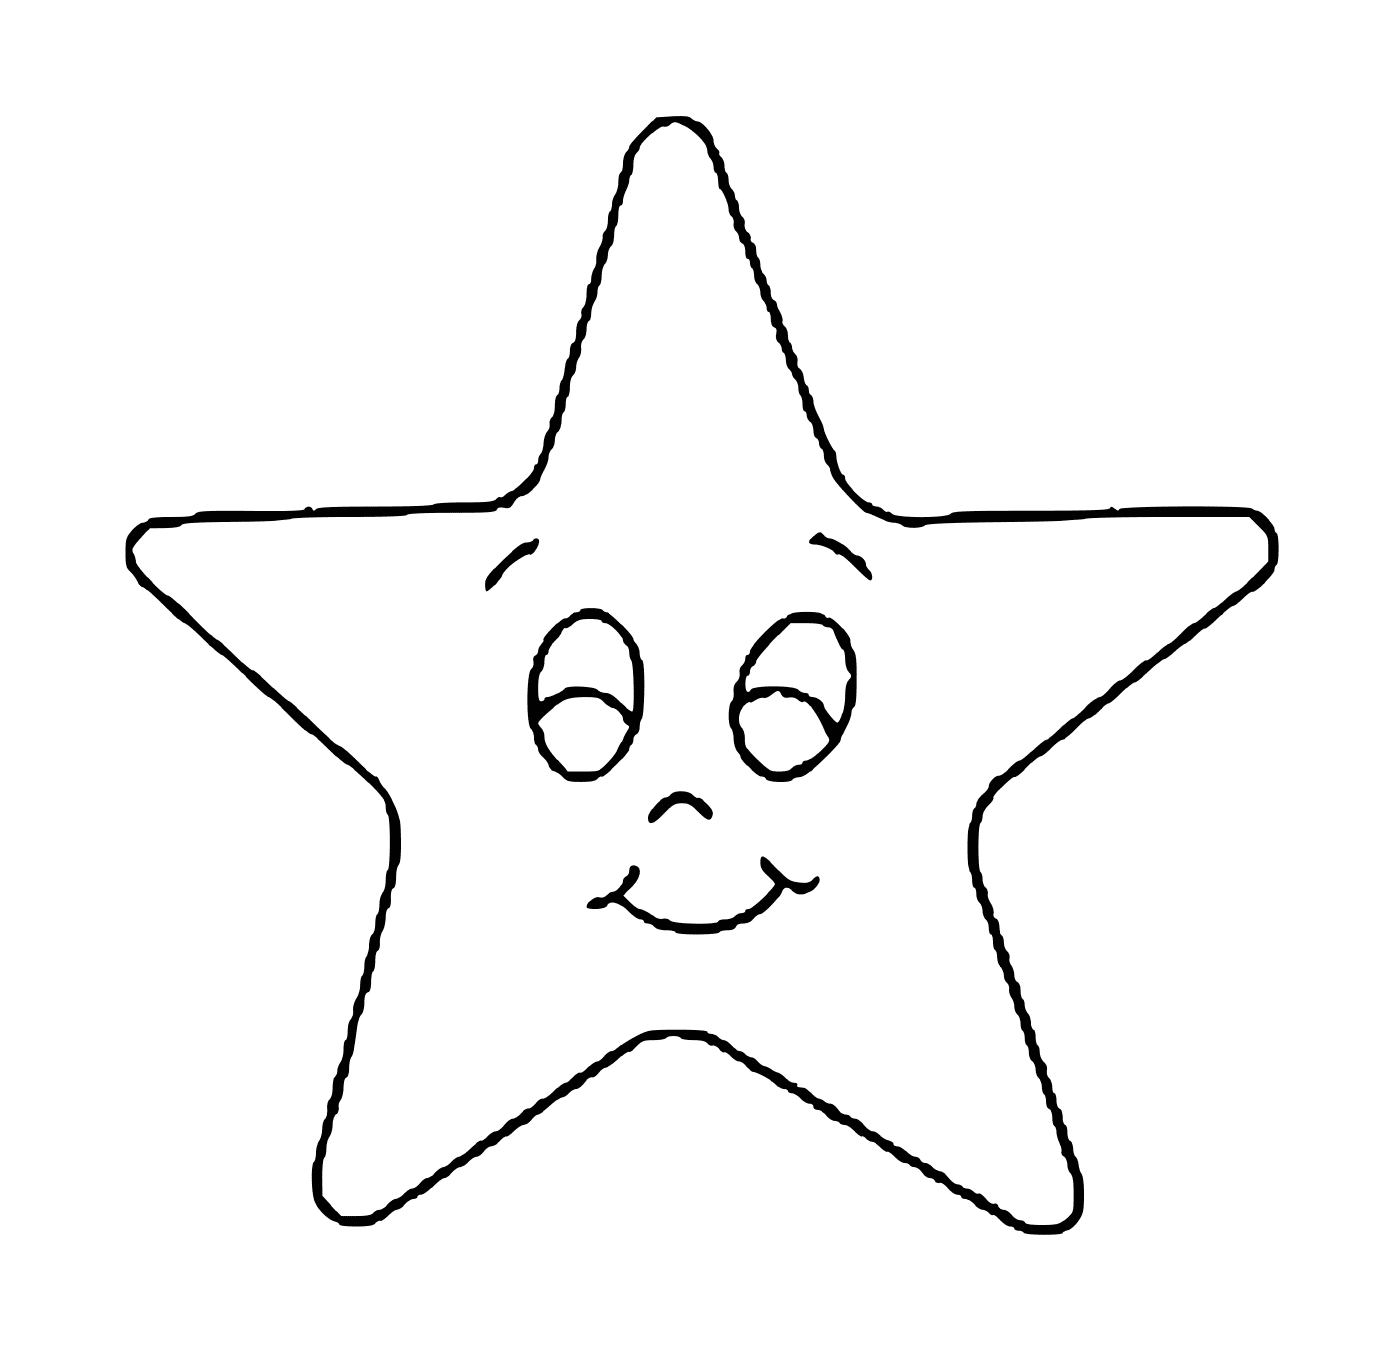  Una stella dal volto sorridente 